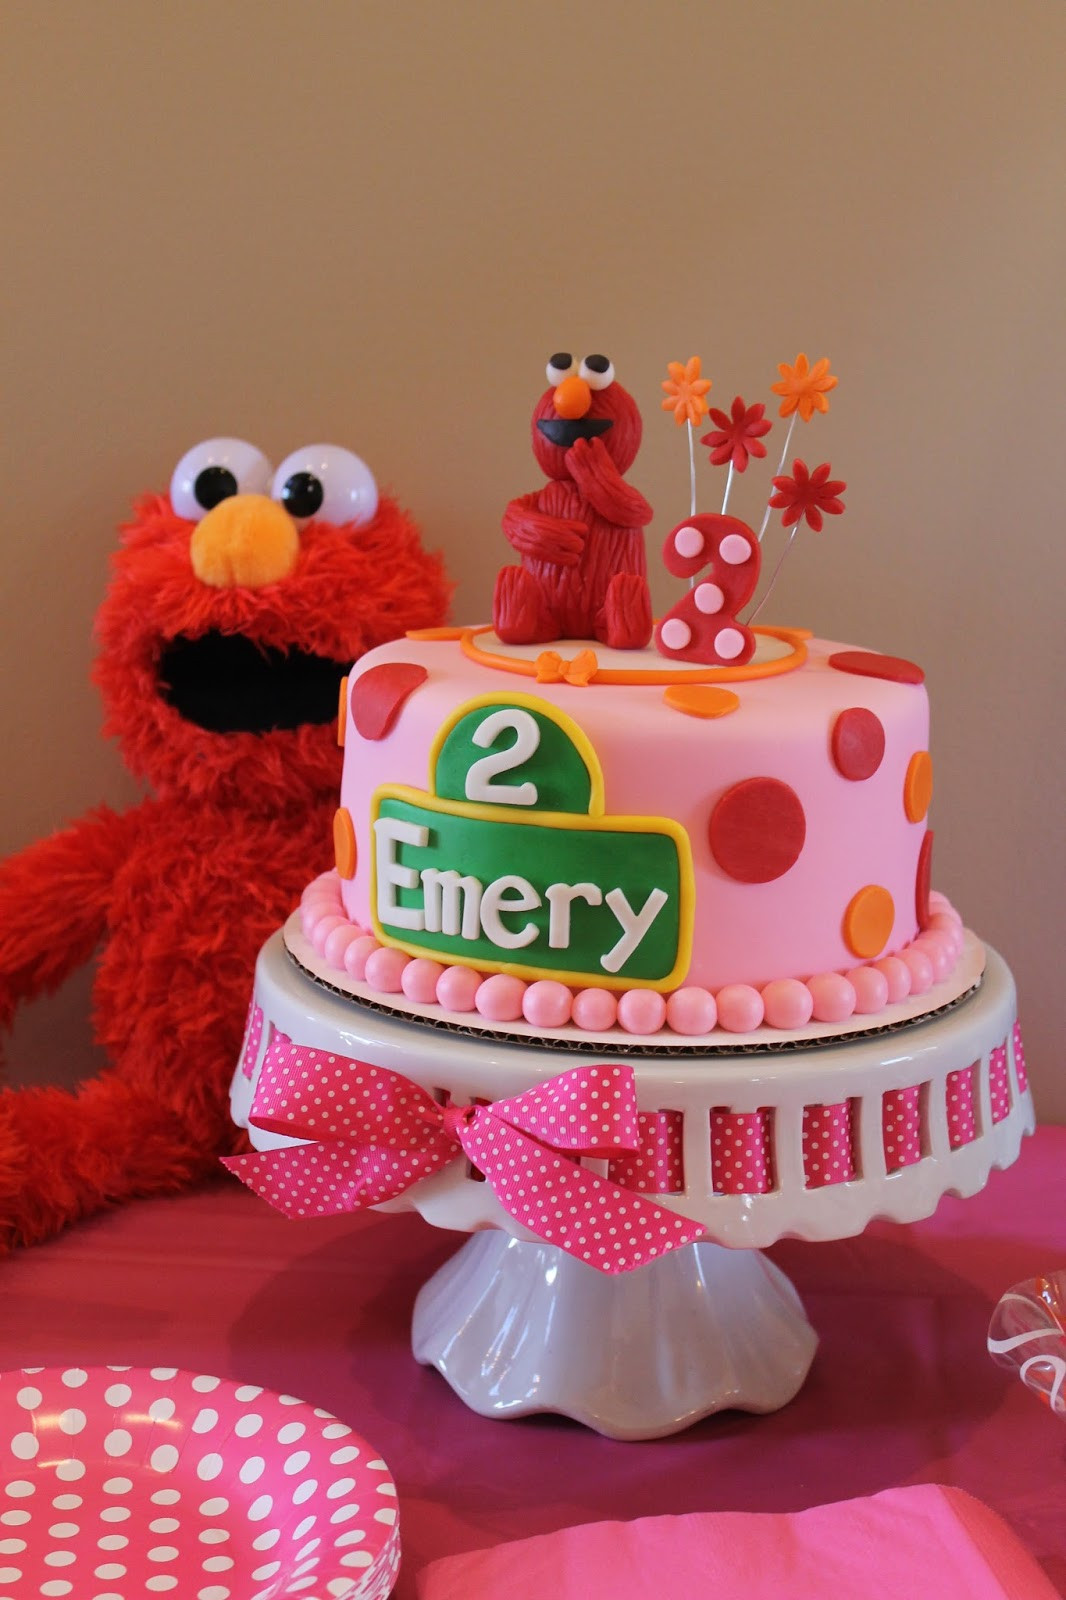 Elmo Birthday Cake
 Richly Blessed Emery Turns TWO Elmo Birthday Party